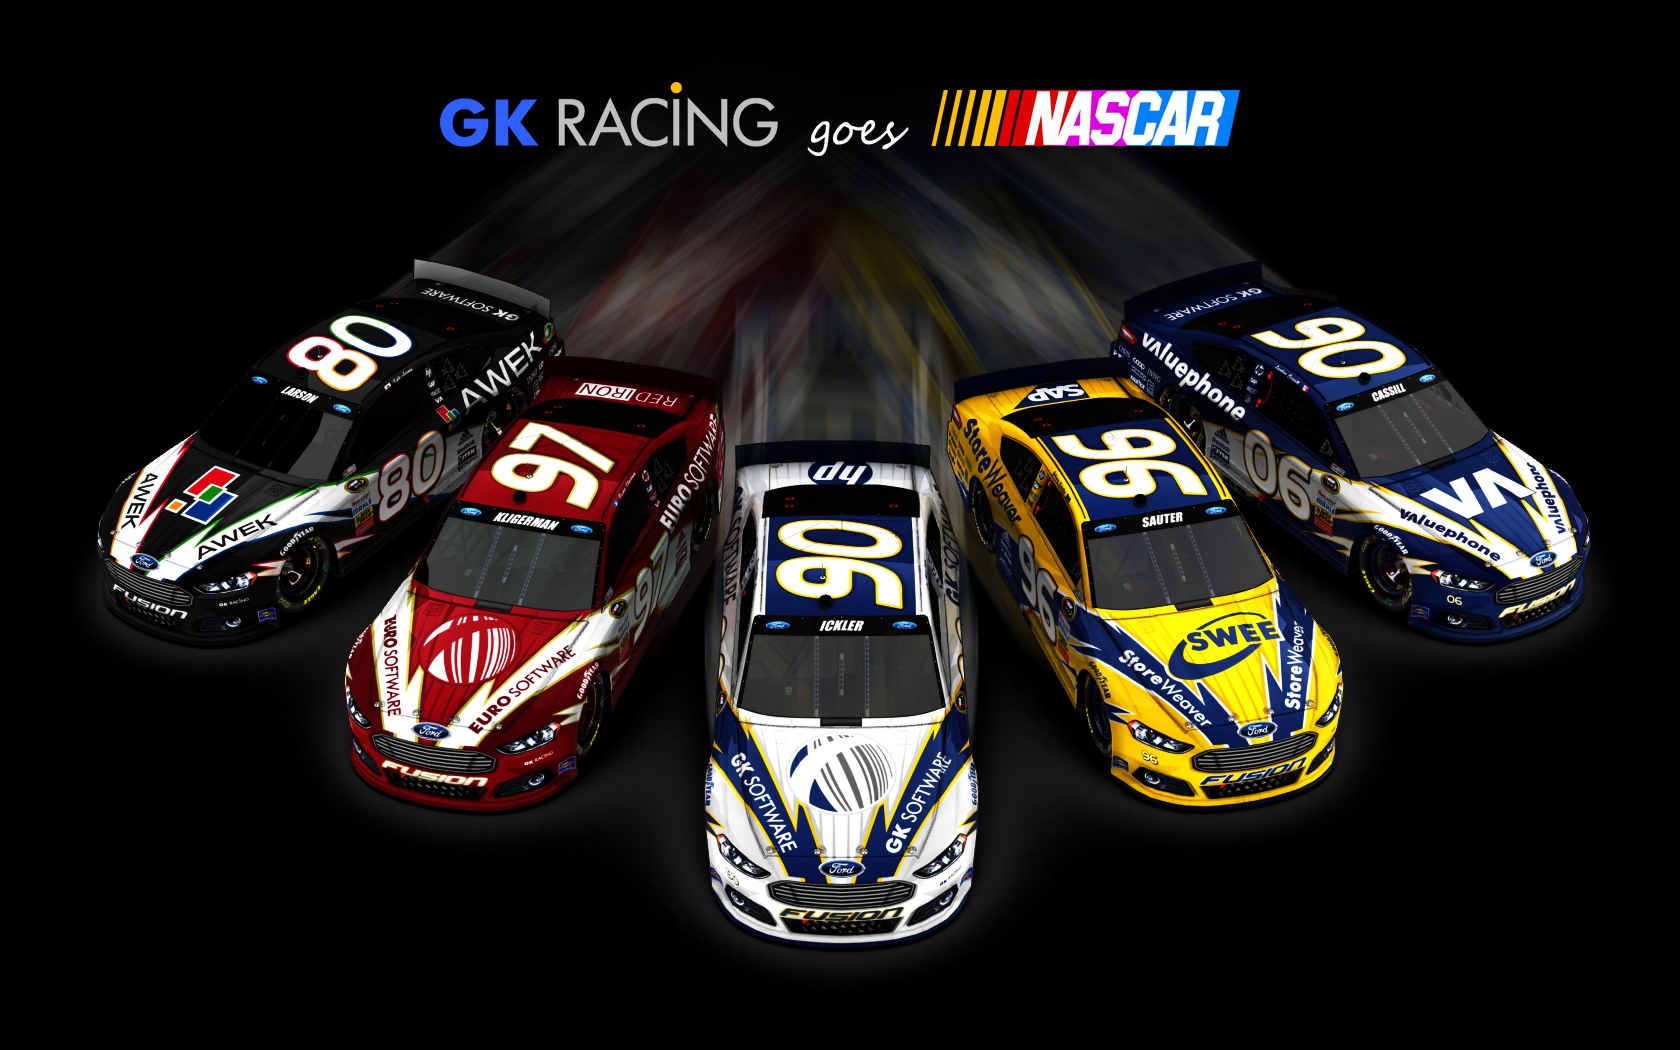 2013 GK Racing, Alle fünf Fahrzeuge (ausschwärmend, schwarzer Hintergrund)